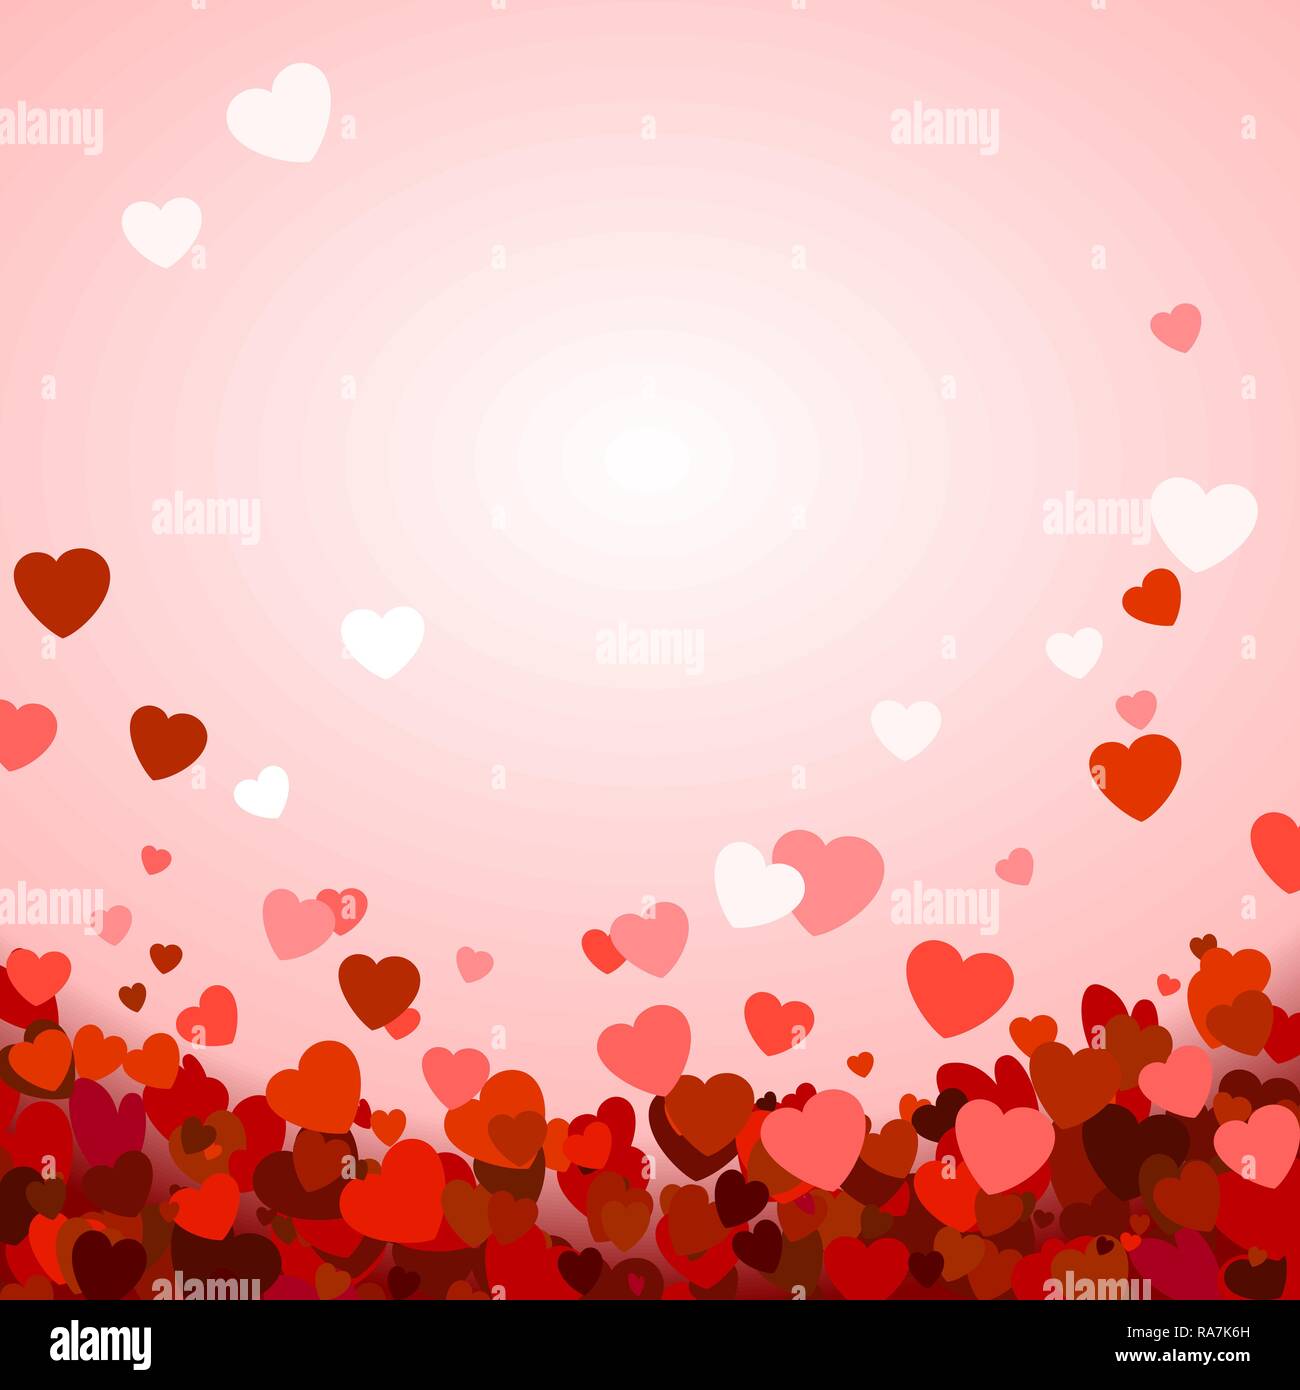 Valentinstag Hintergrund mit Herzen. Romantische Dekoration Elemente. Hintergrund mit fallenden Herzen Konfetti. Vector Illustration Stock Vektor